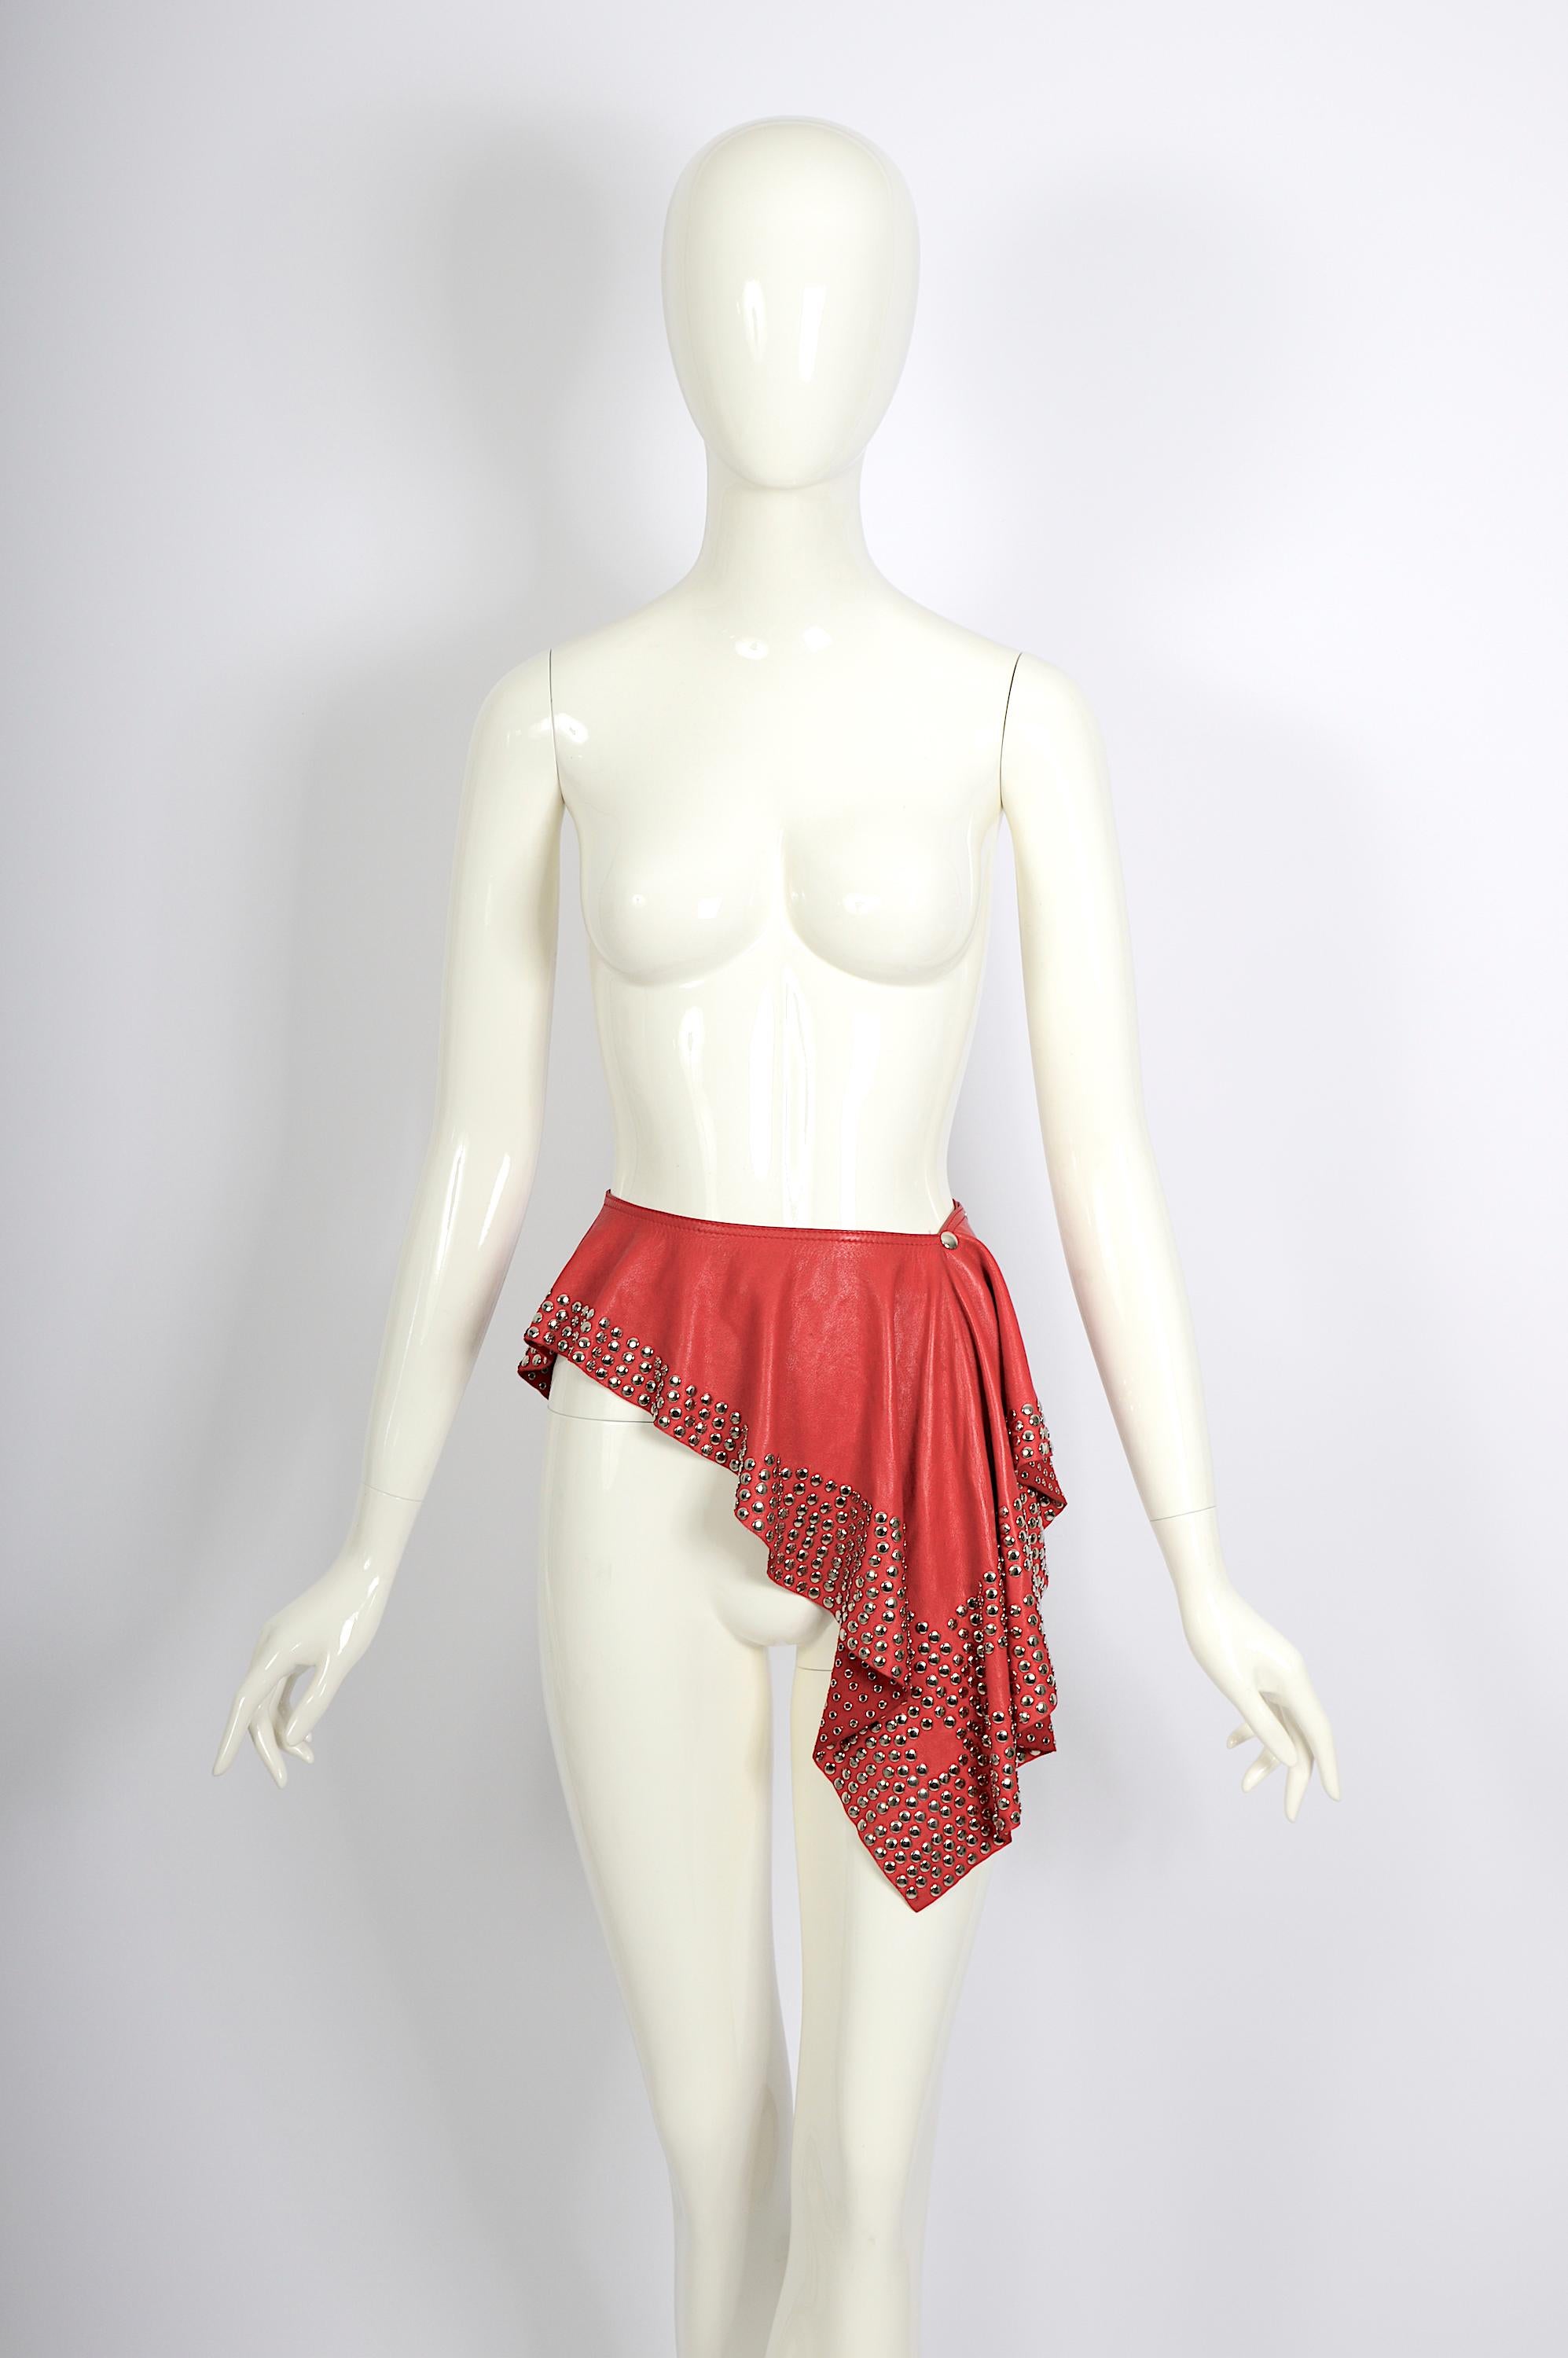 Améliorez les archives de votre collection Azzedine Alaïa avec cette importante, exceptionnelle, unique jupe vintage Alaïa à ceinture en cuir rouge datant de circa 1981.
Confectionné en cuir d'agneau, il présente un drapé chic à la taille, rehaussé